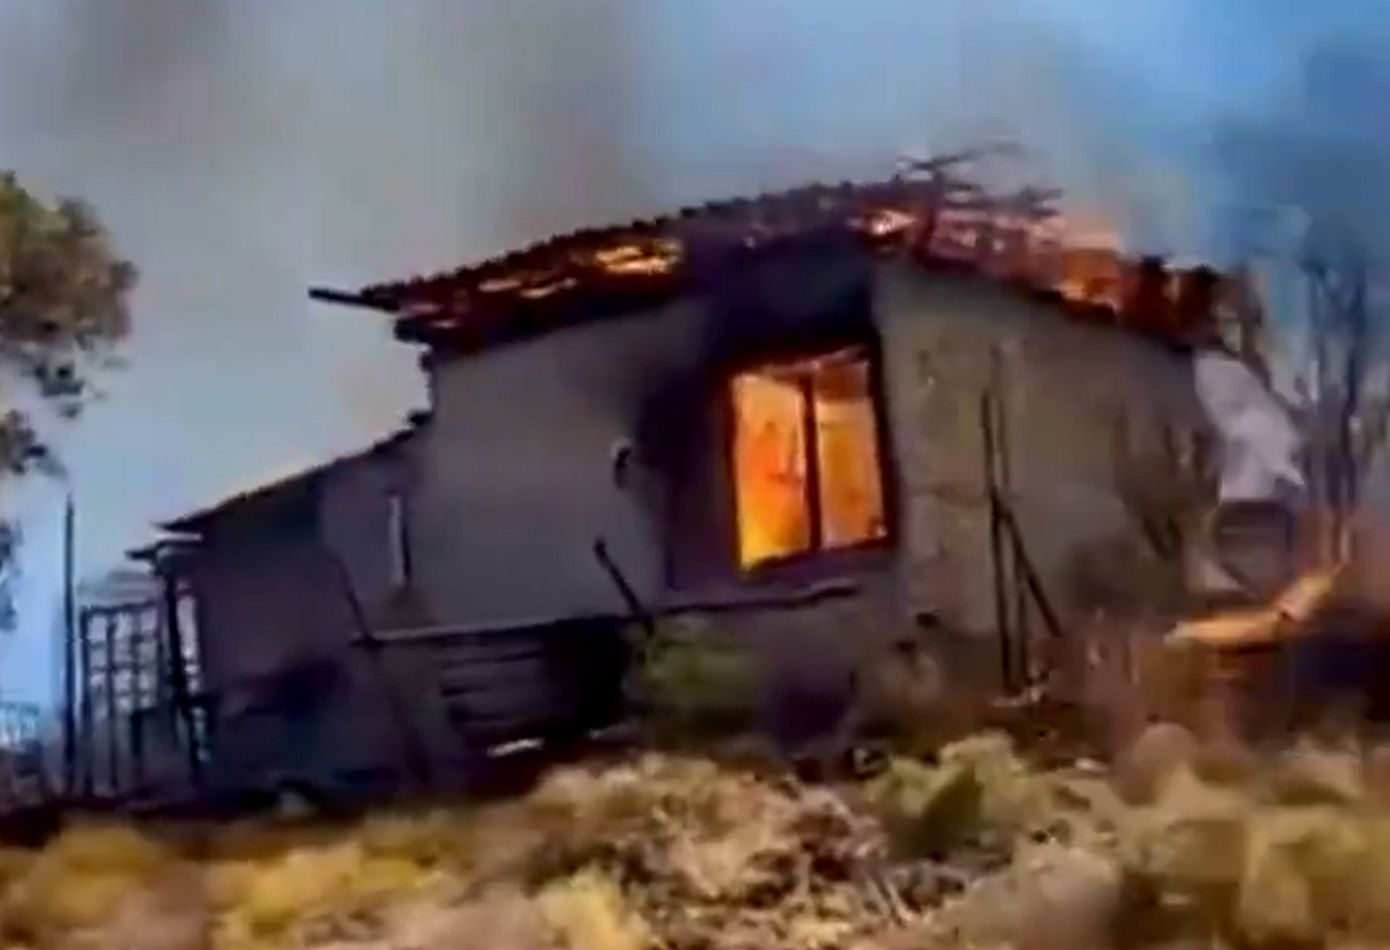 Καίγονται σπίτια στην Κερατέα &#8211; Έχουν εκκενωθεί 6 οικισμοί &#8211; ενισχύονται συνεχώς οι πυροσβεστικές δυνάμεις